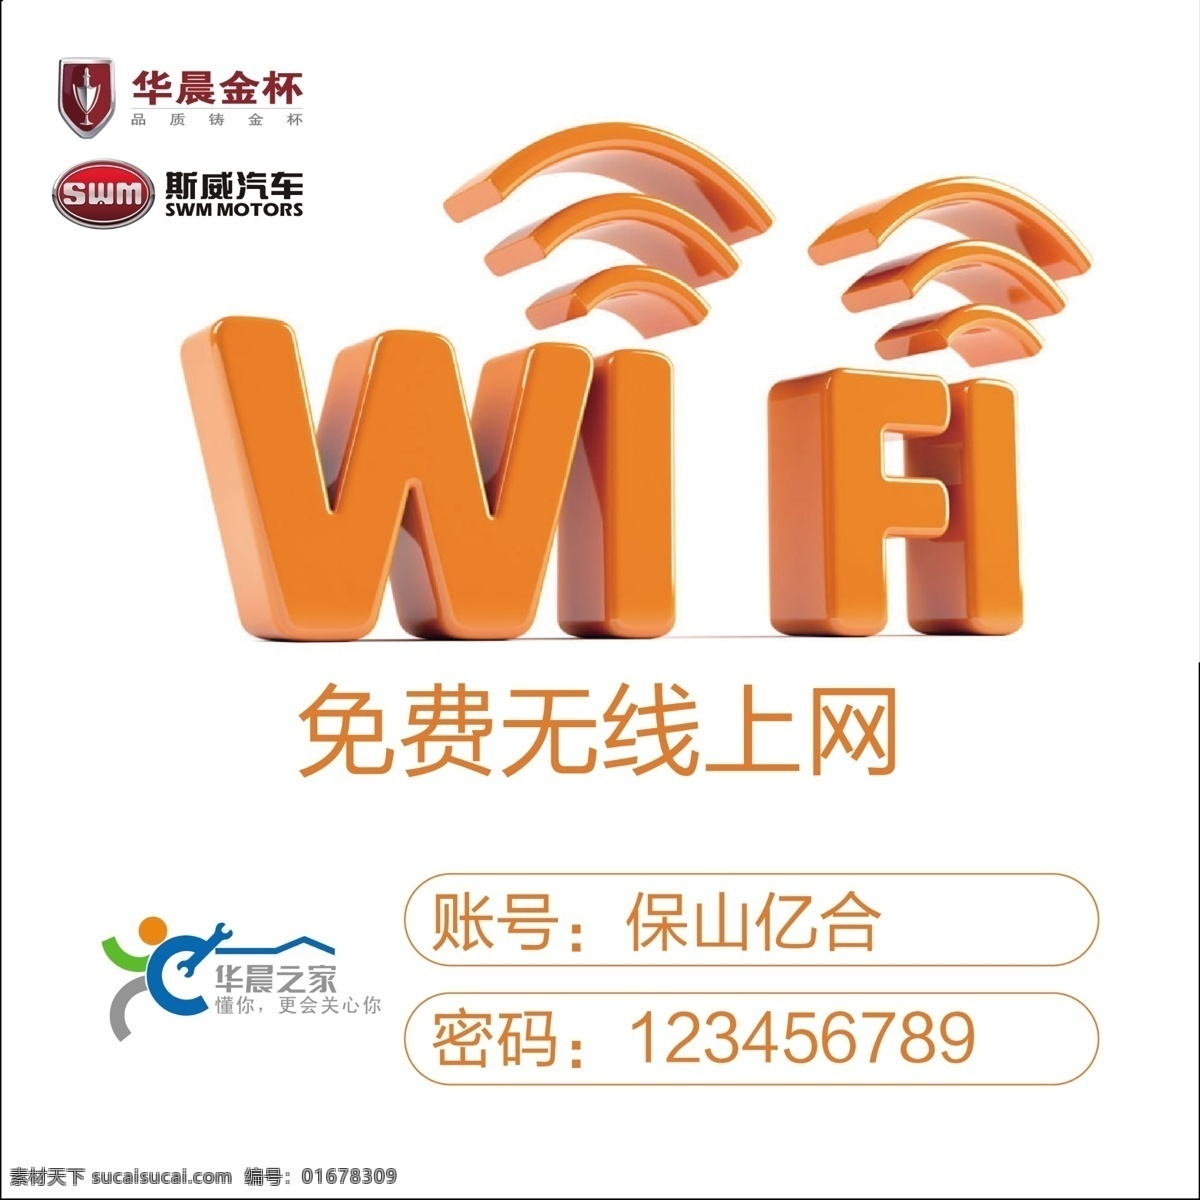 wifi 上网 图标 免费上网 华晨金杯 logo 提示贴